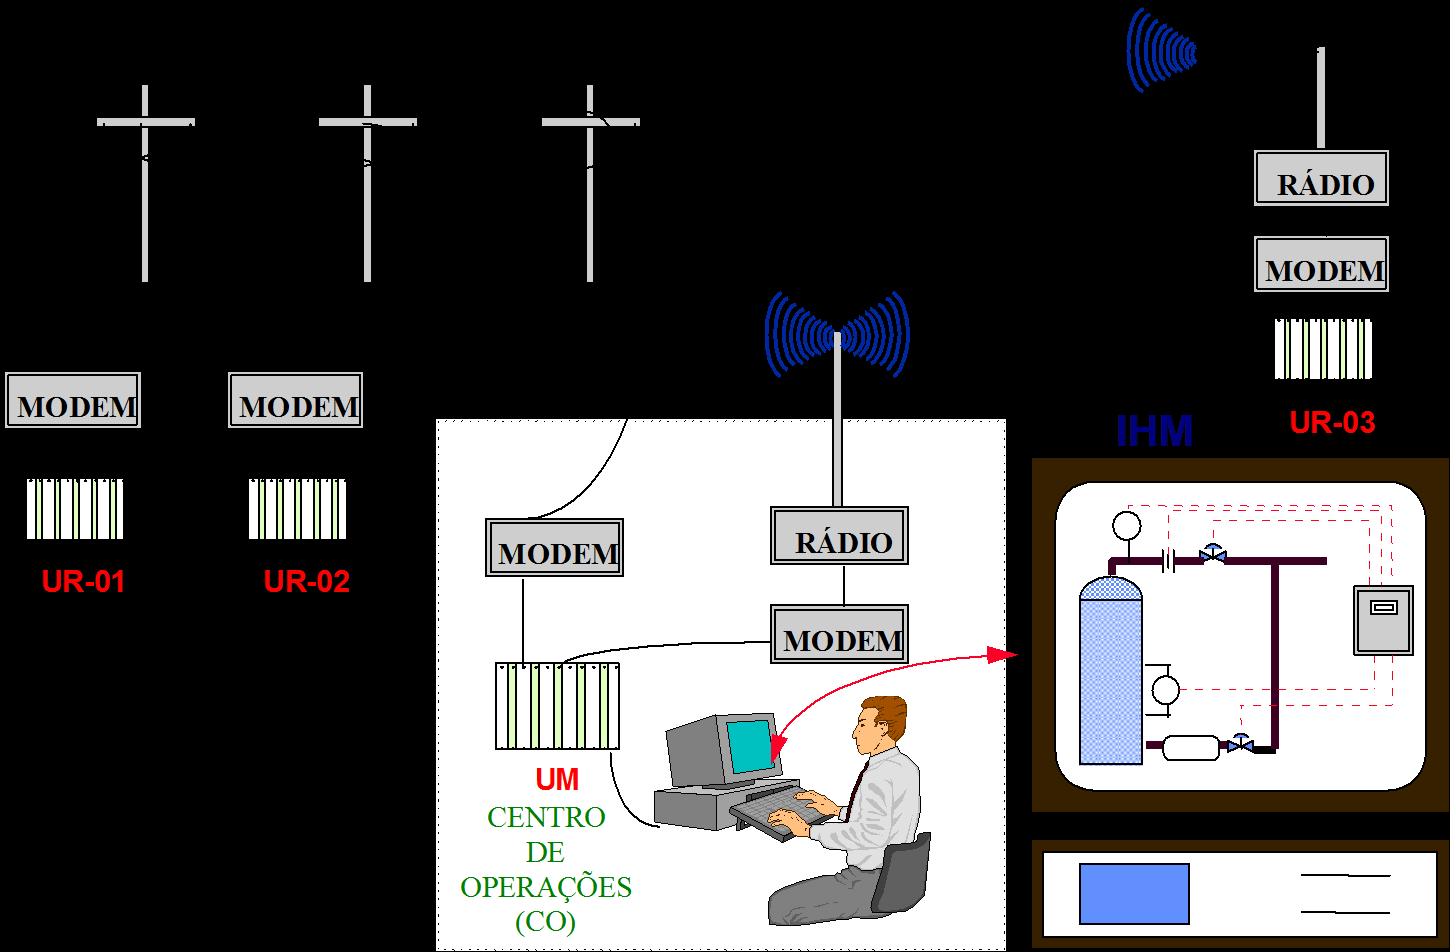 Sistema de comunicação que permite a troca de informações entre o CO e as URs Uma ou mais Unidades Remotas (URs) que interagem